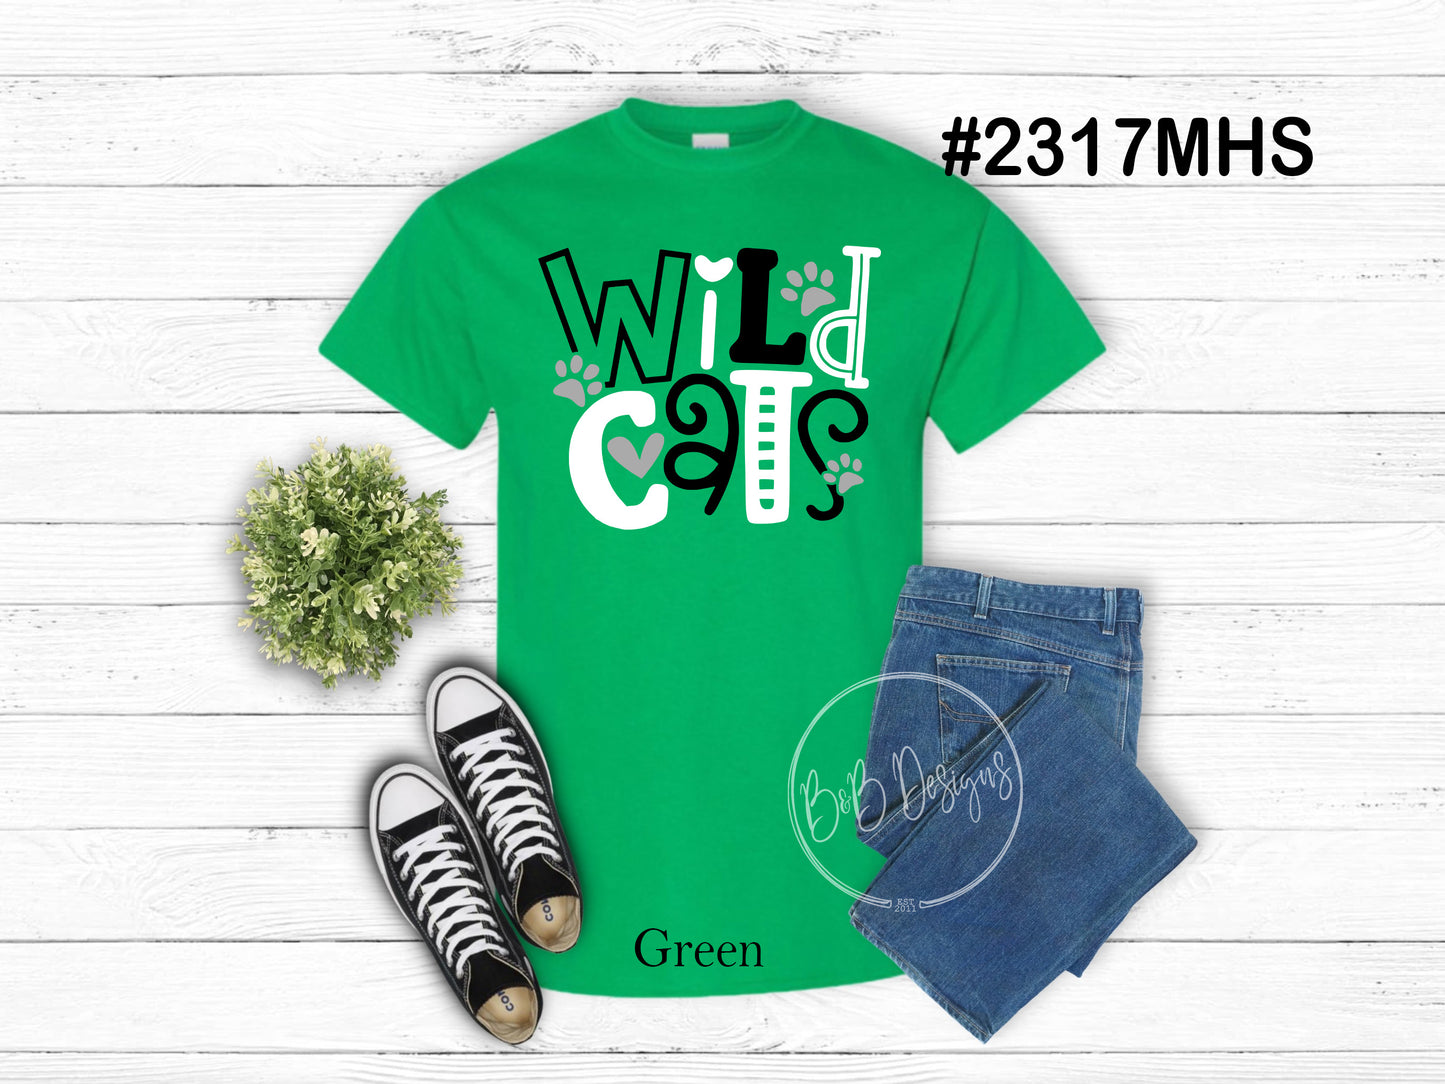 Wildcats 2317MHS